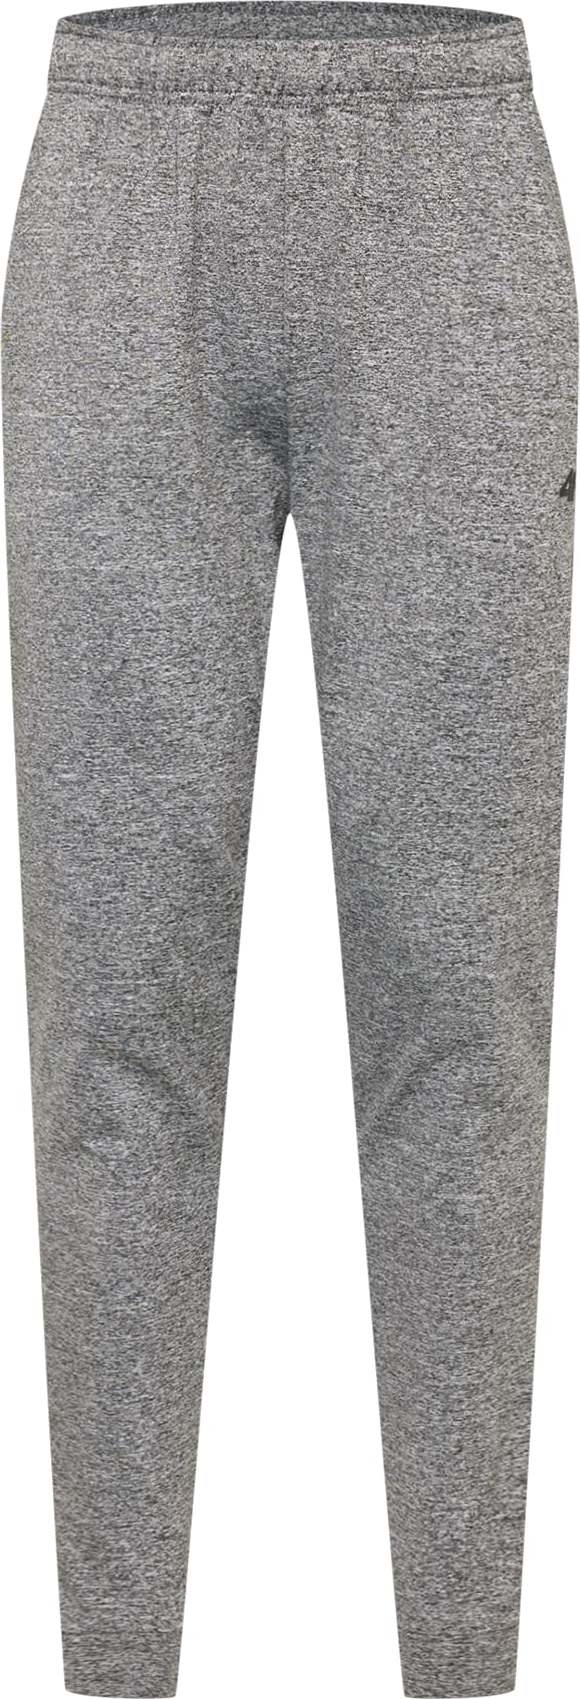 4F Sportovní kalhoty šedý melír